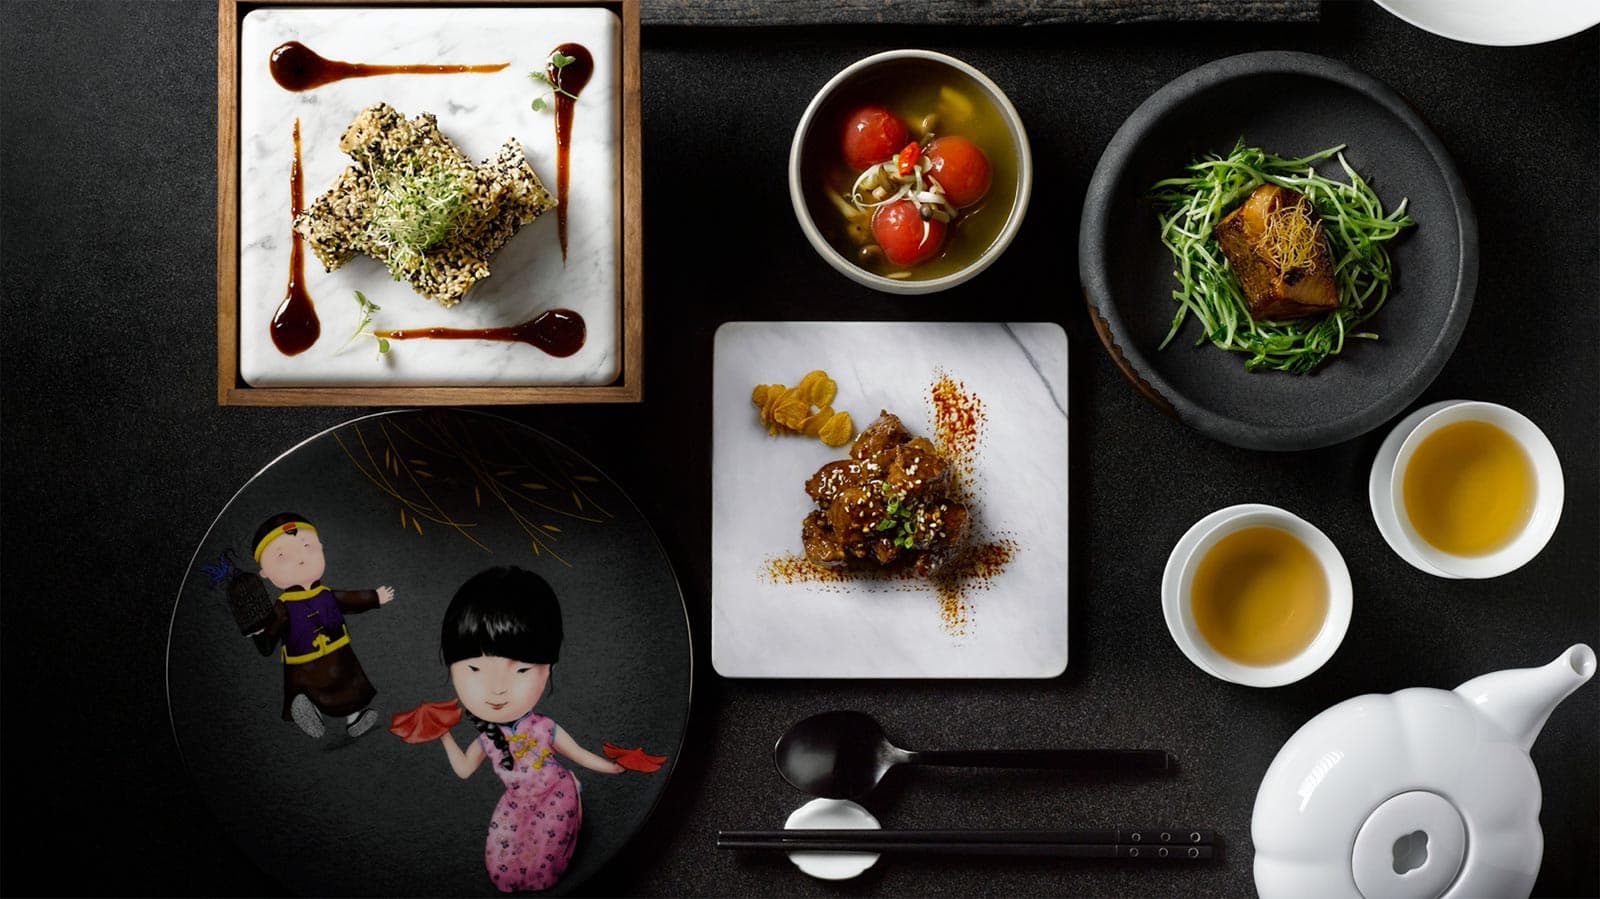 Nơi triết lý “Eat Clean” giao thoa ẩm thực Trung Hoa hiện đại